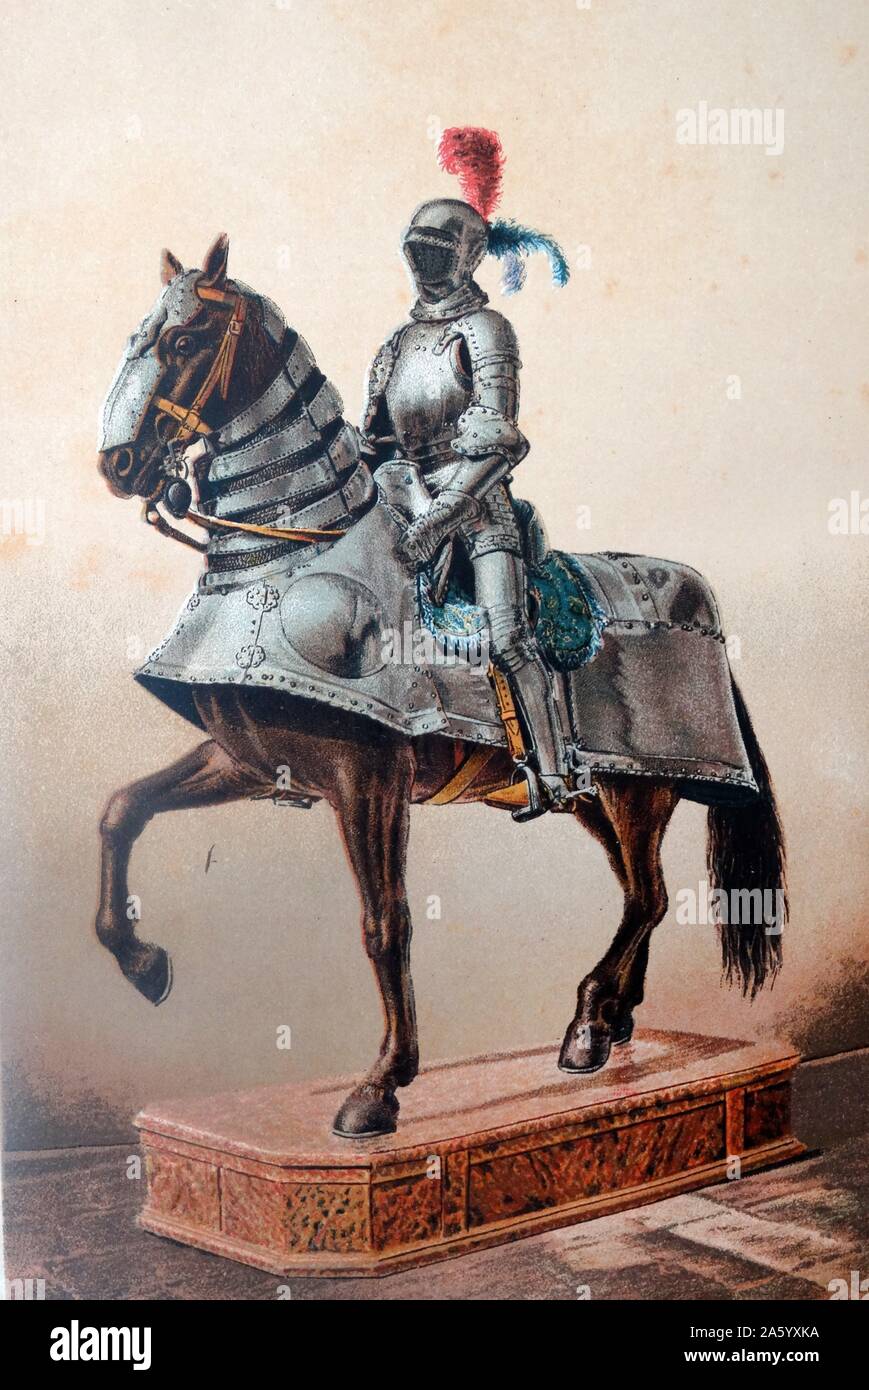 Armure appartenant à Hernán Cortés (1485 - 1547), Conquistador espagnol qui a mené une expédition qui a causé la chute de l'Empire Aztèque et apporté une grande partie de la partie continentale du Mexique en vertu de la règle du Roi de Castille au début du 16ème siècle Banque D'Images